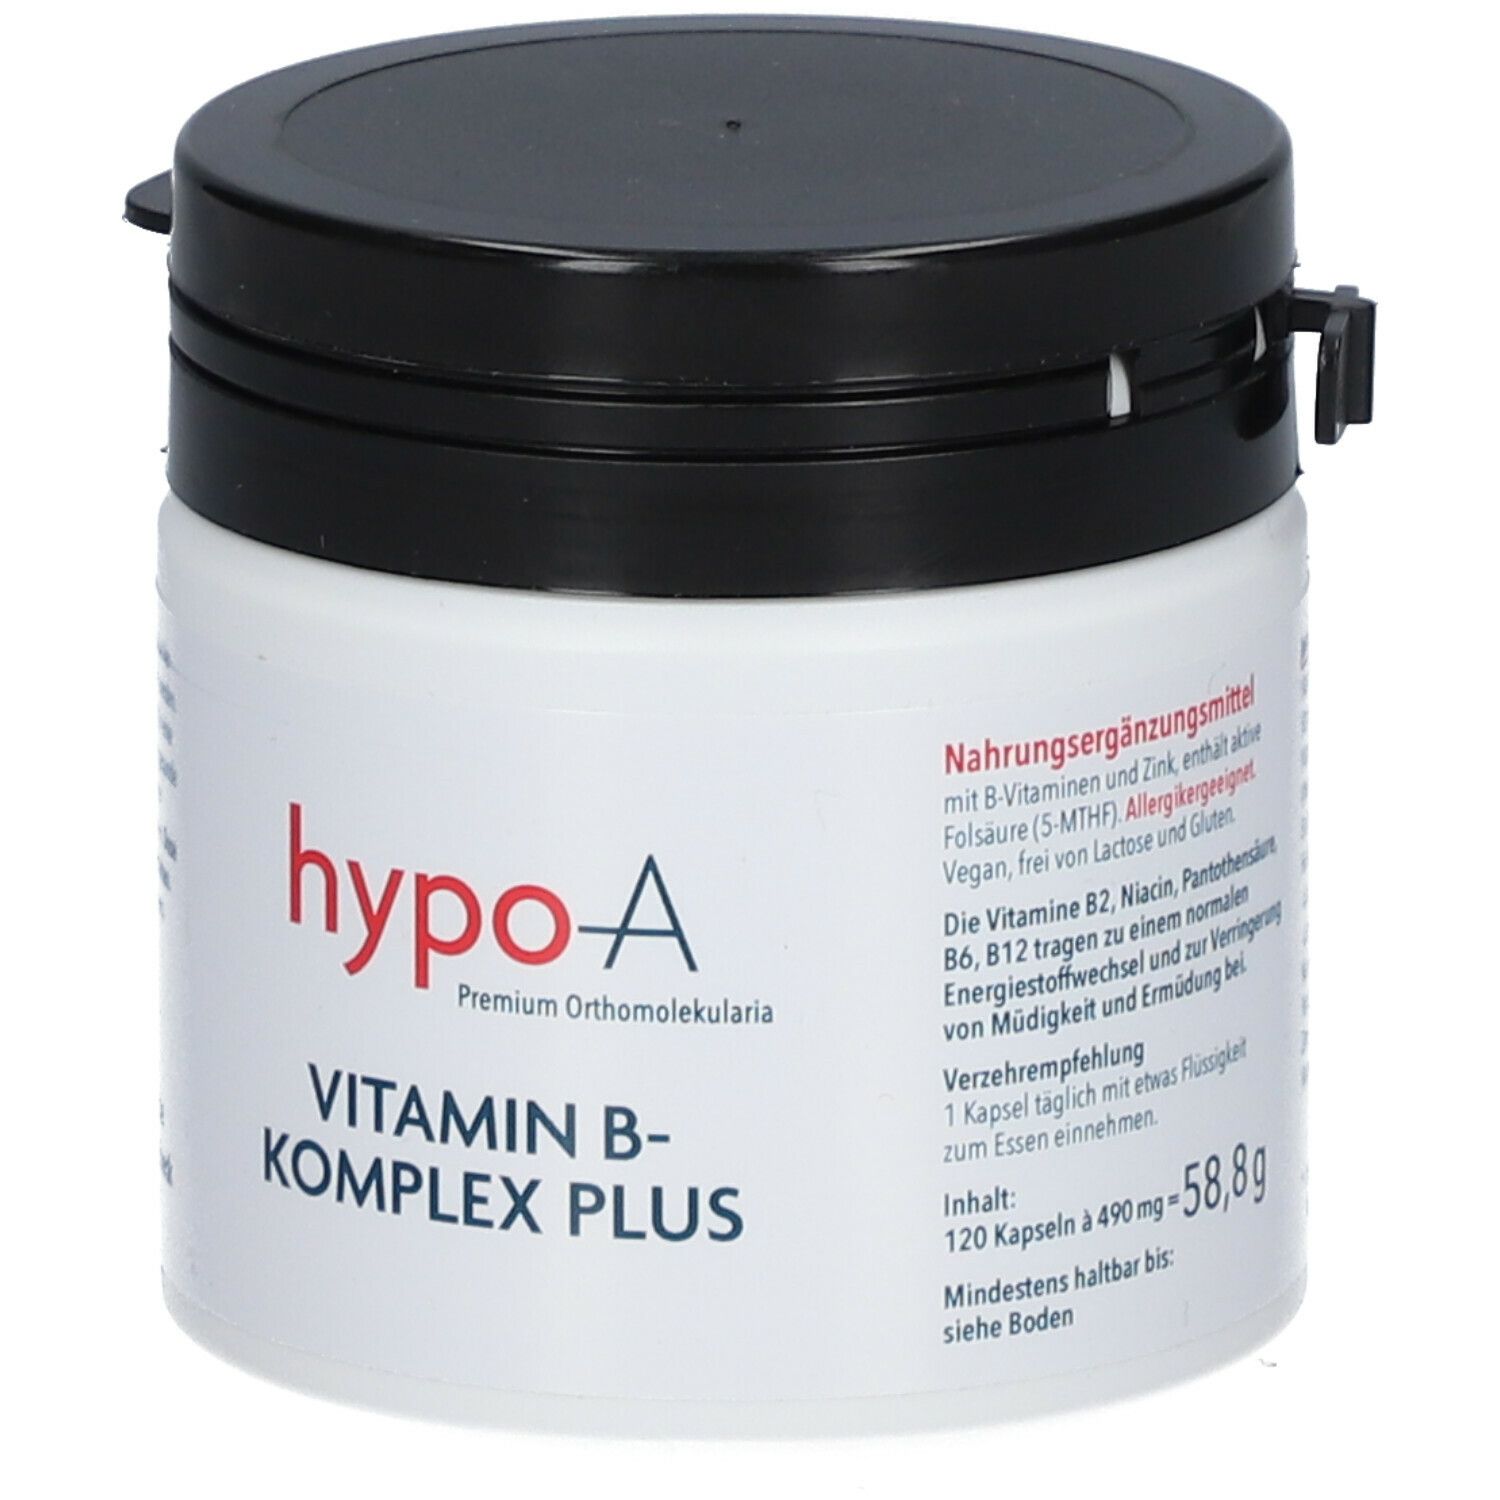 hypo-A Vitamin B-Komplex plus